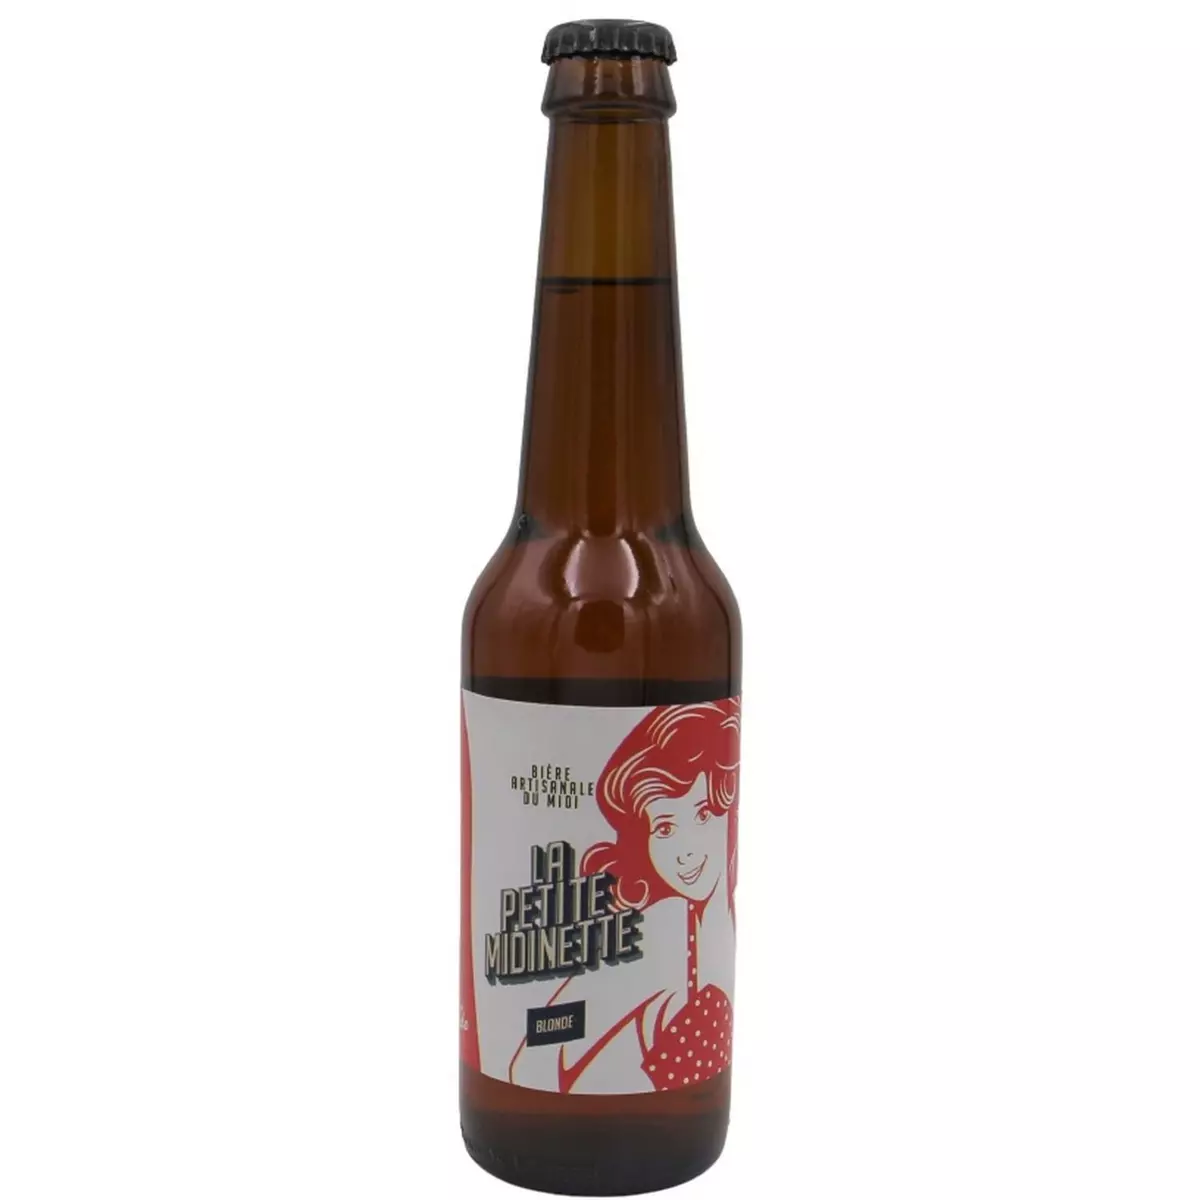 LA PETITE MIDINETTE Bière blonde artisanale 6% bouteille 33cl